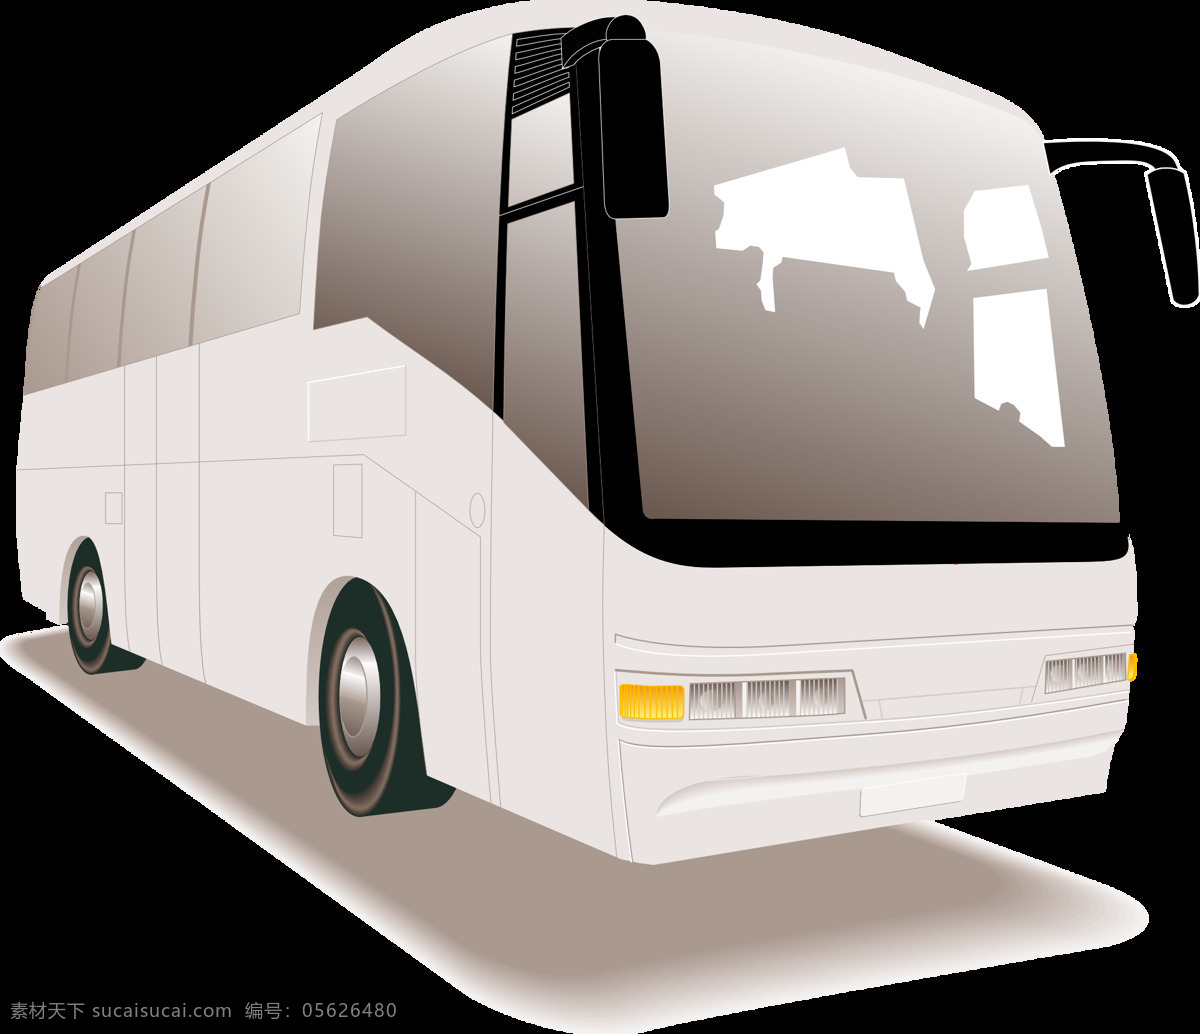 双层巴士 交通 车辆 运输 汽车 商用车 交通工具 运输车辆 载客 客车 长途客车 长途大巴 长途巴士 旅行 旅游 出游 现代科技